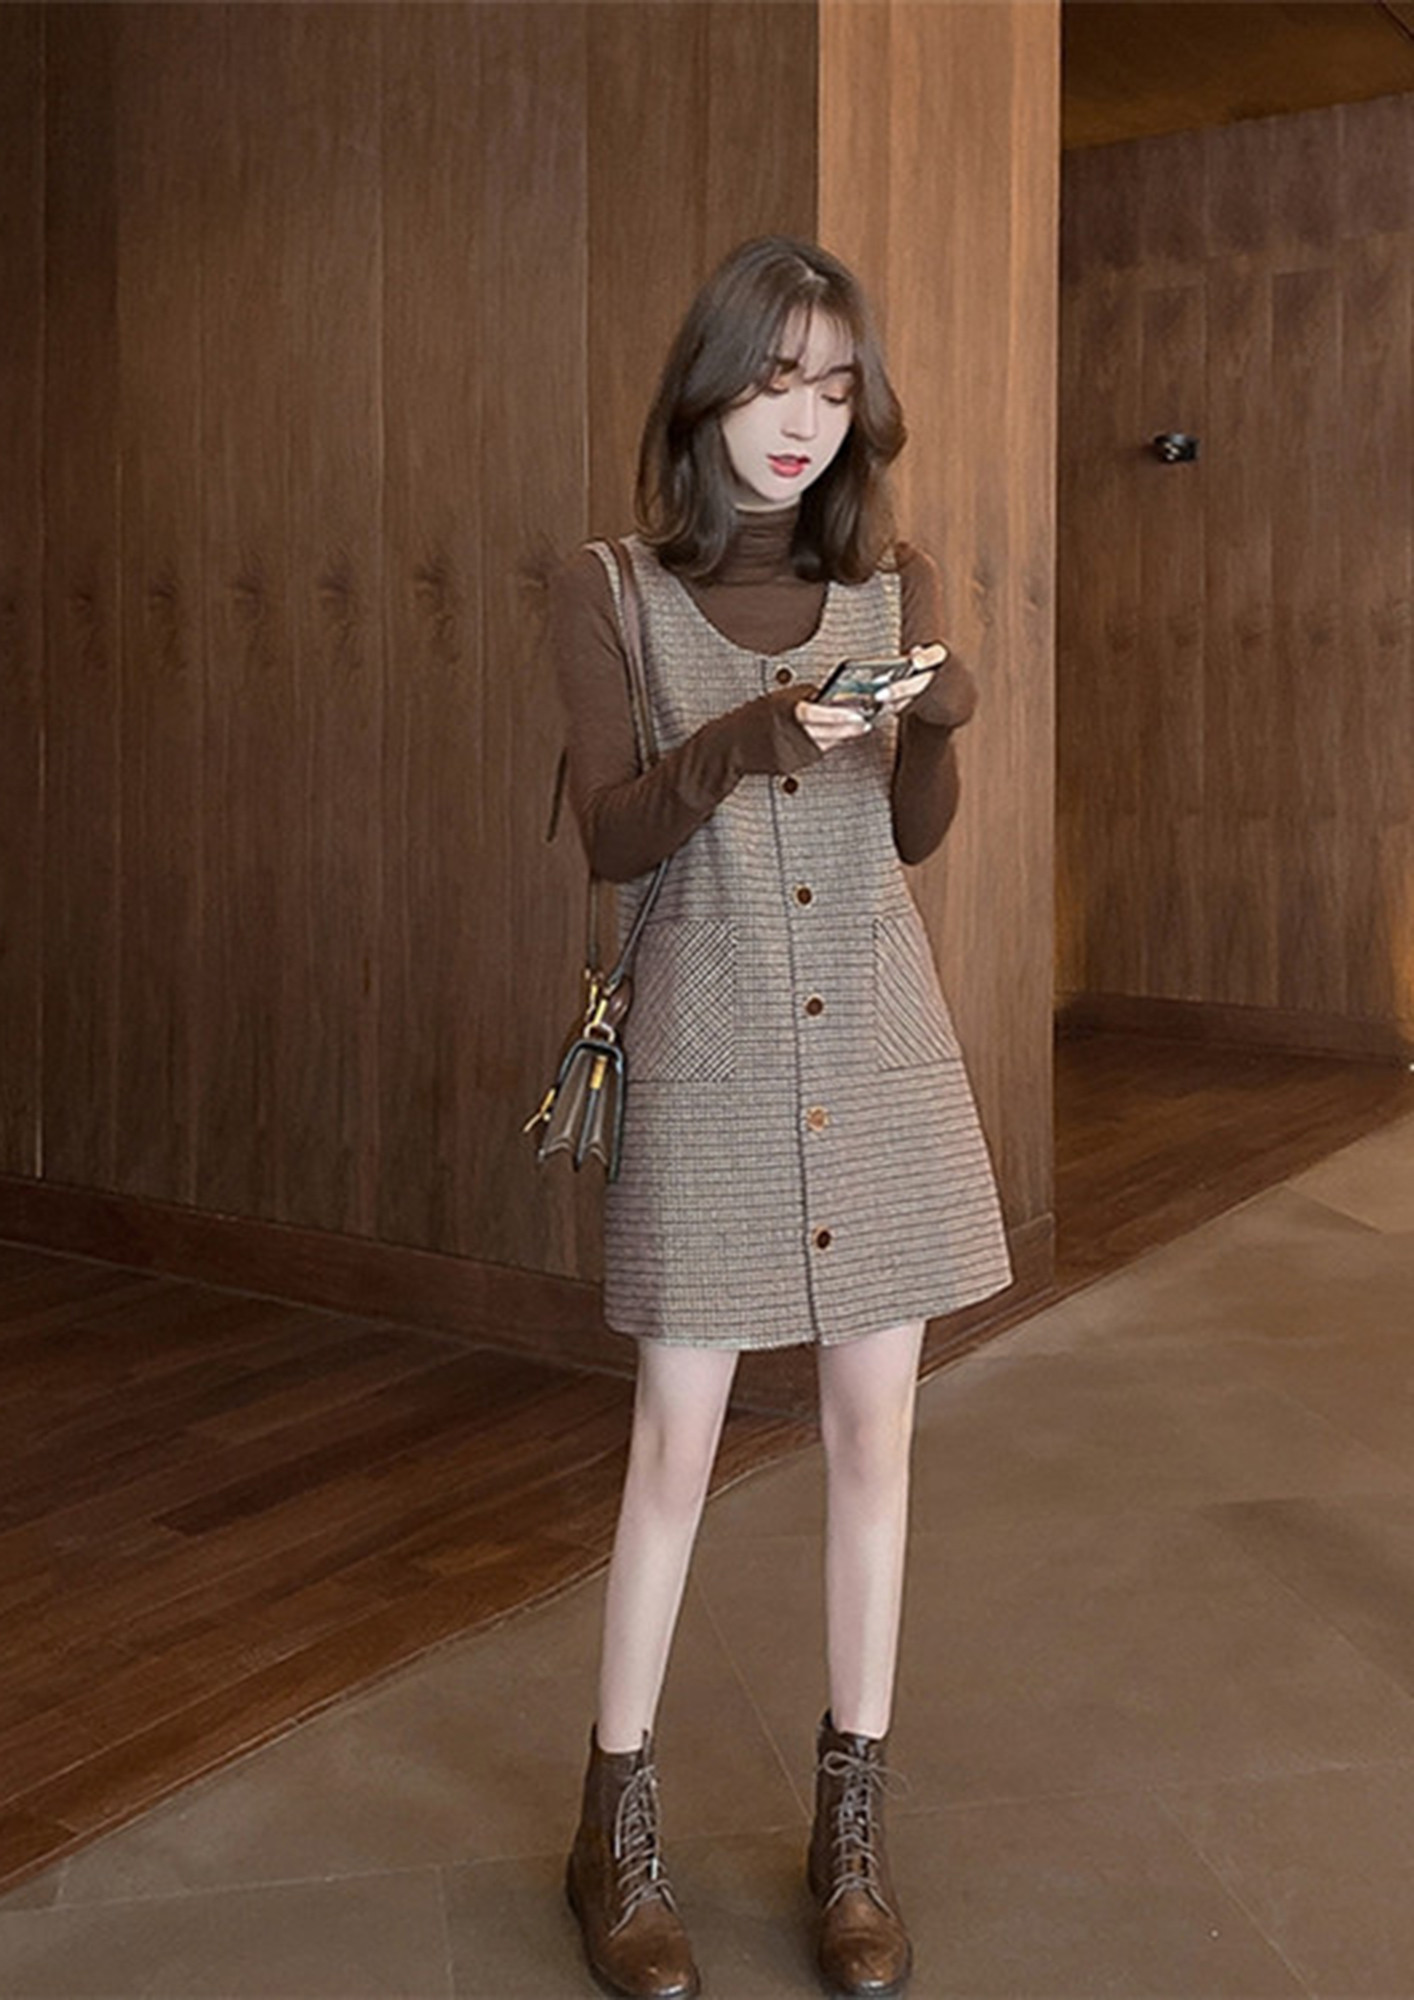 Korean Girls Fashion// Korean Dress Designs//Korean Style Fashion Trends -  YouTube